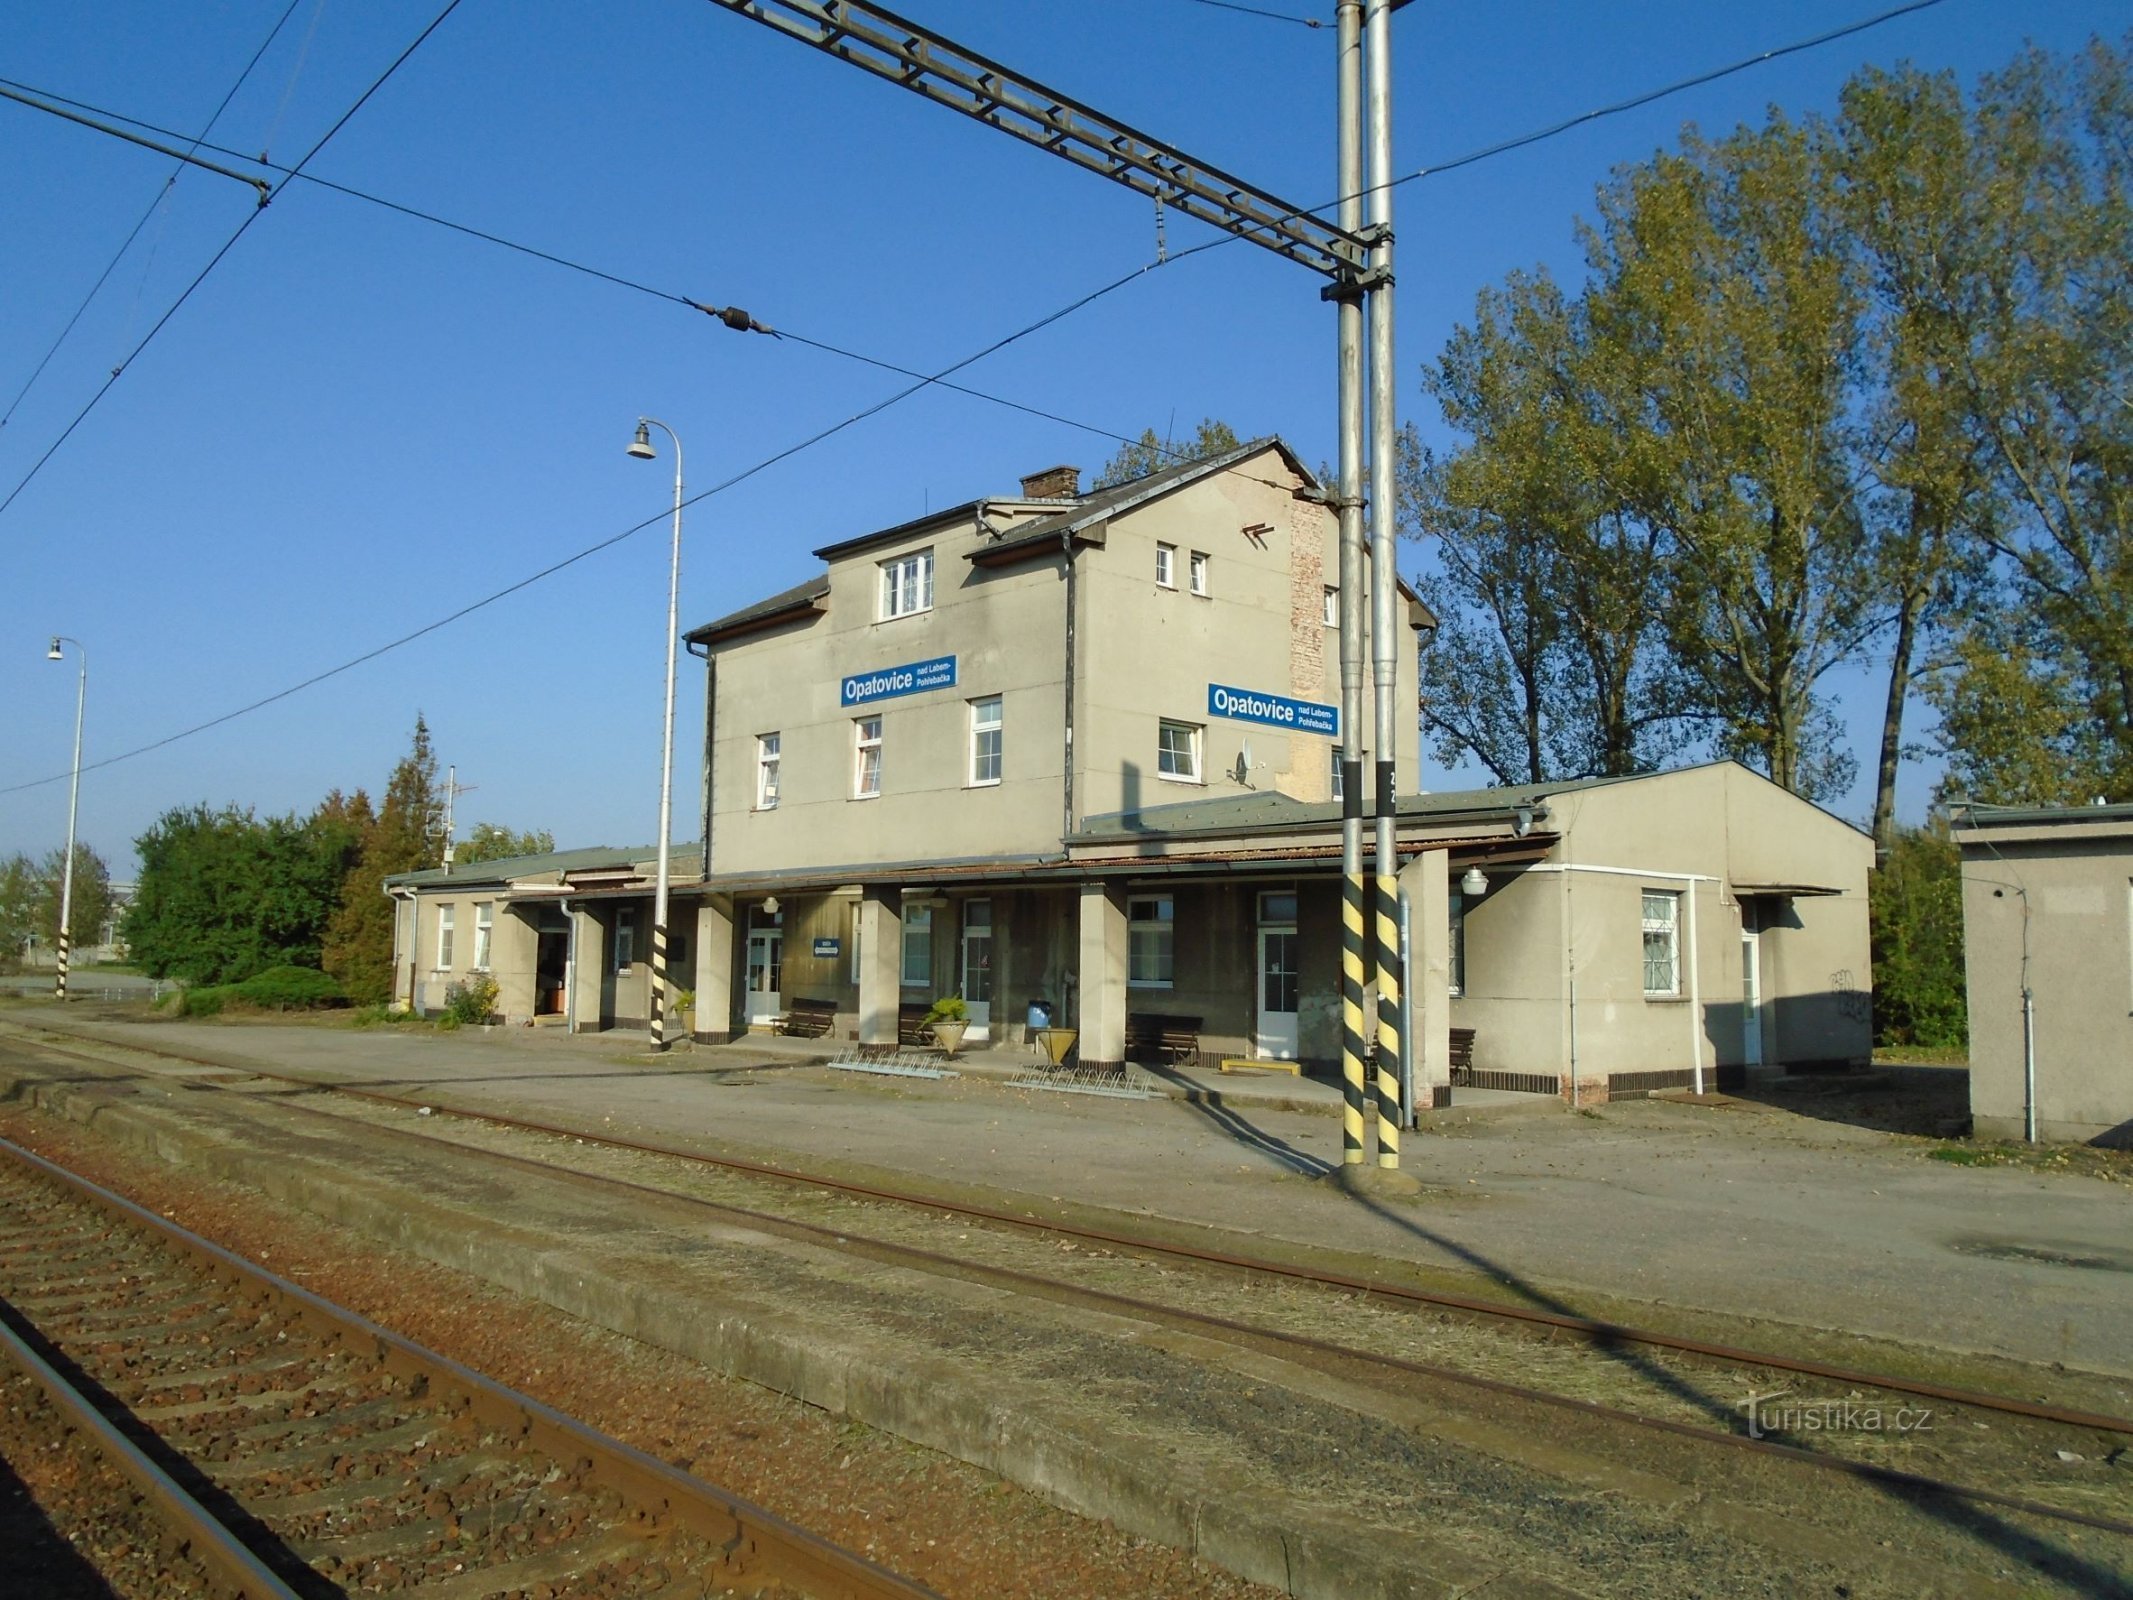 Stacja kolejowa Opatovice nad Labem-Pohřebačka (30.9.2017)